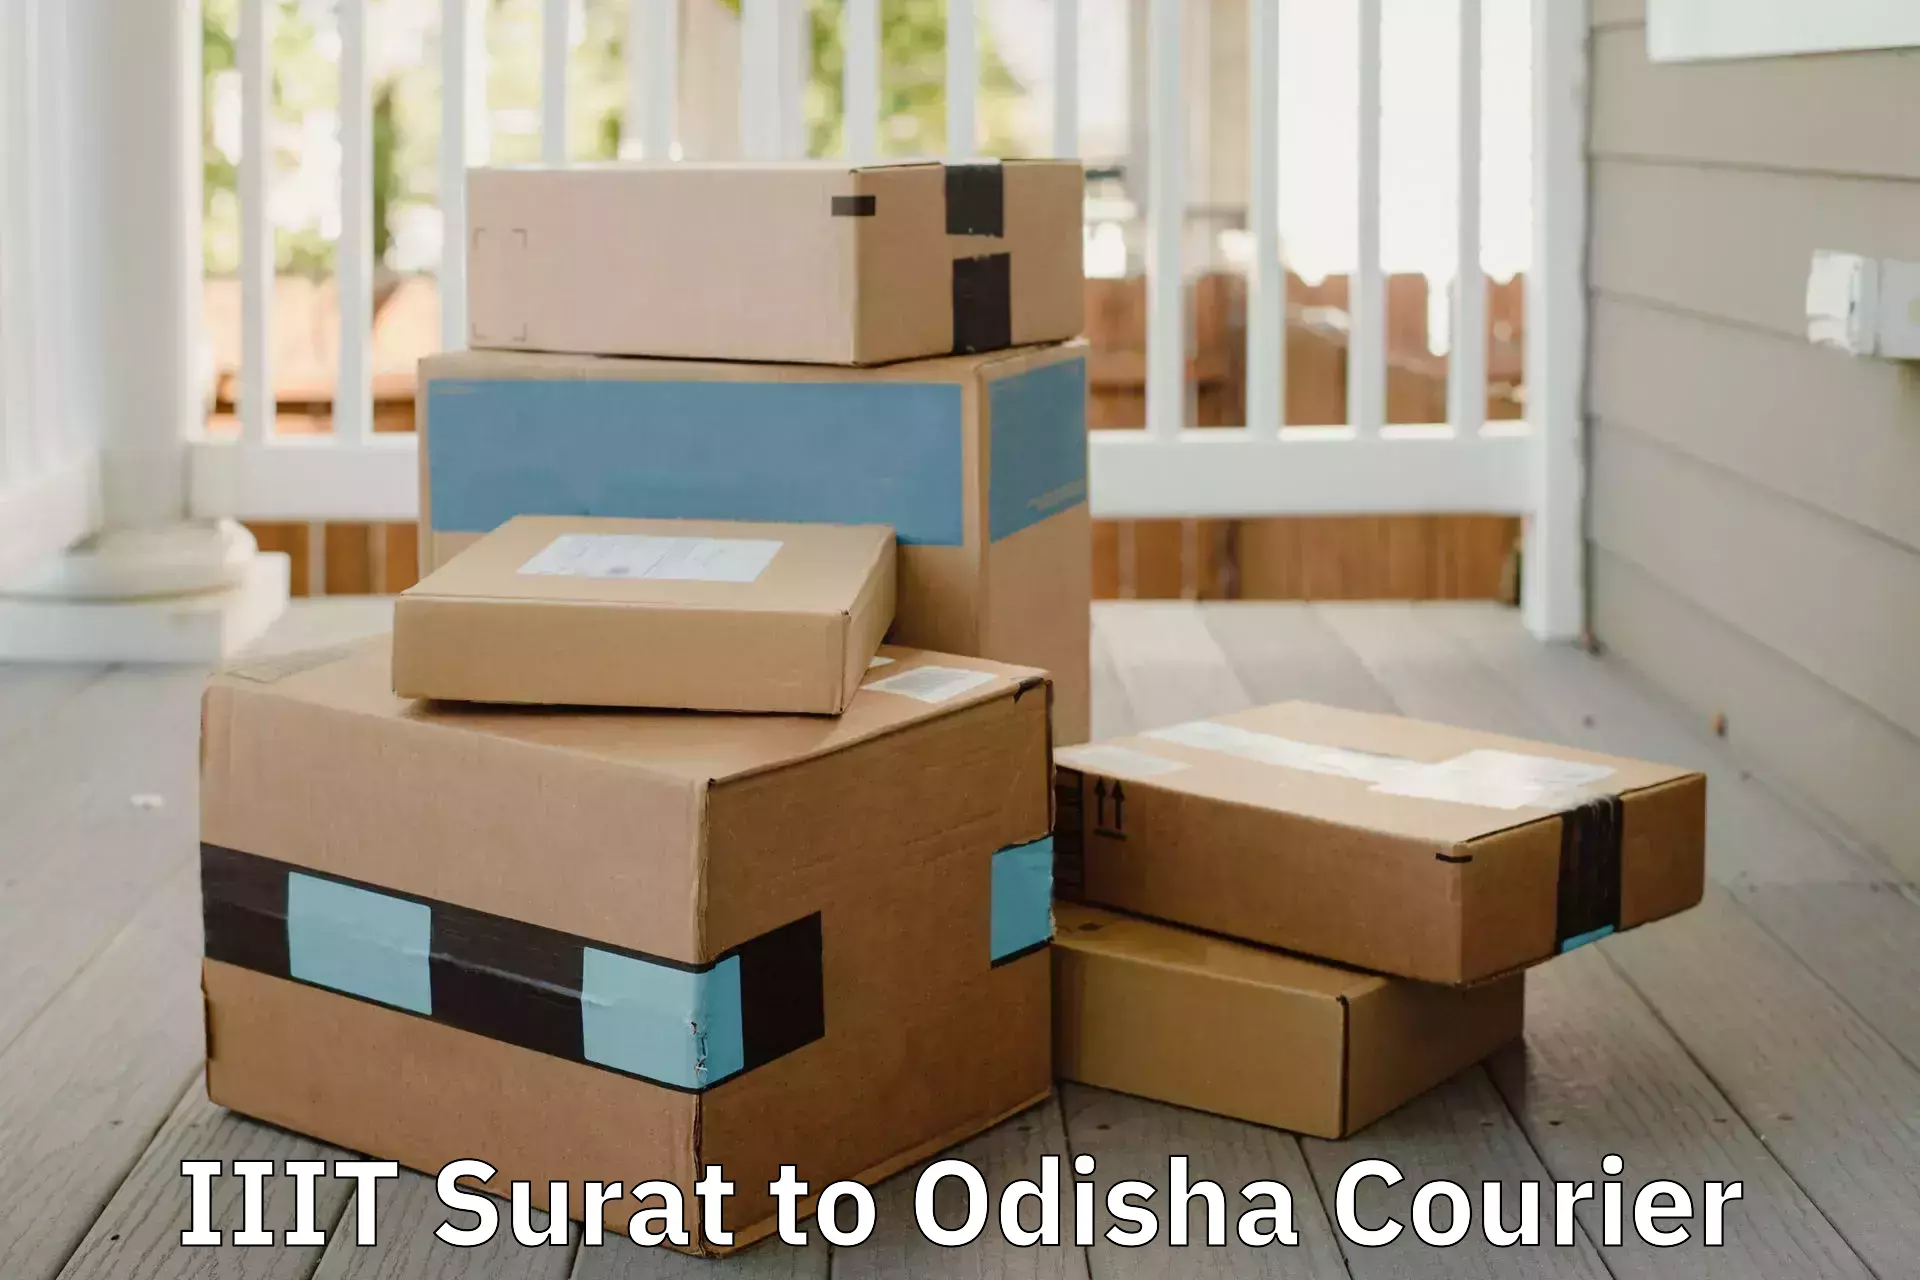 Online household goods transport in IIIT Surat to Tirtol